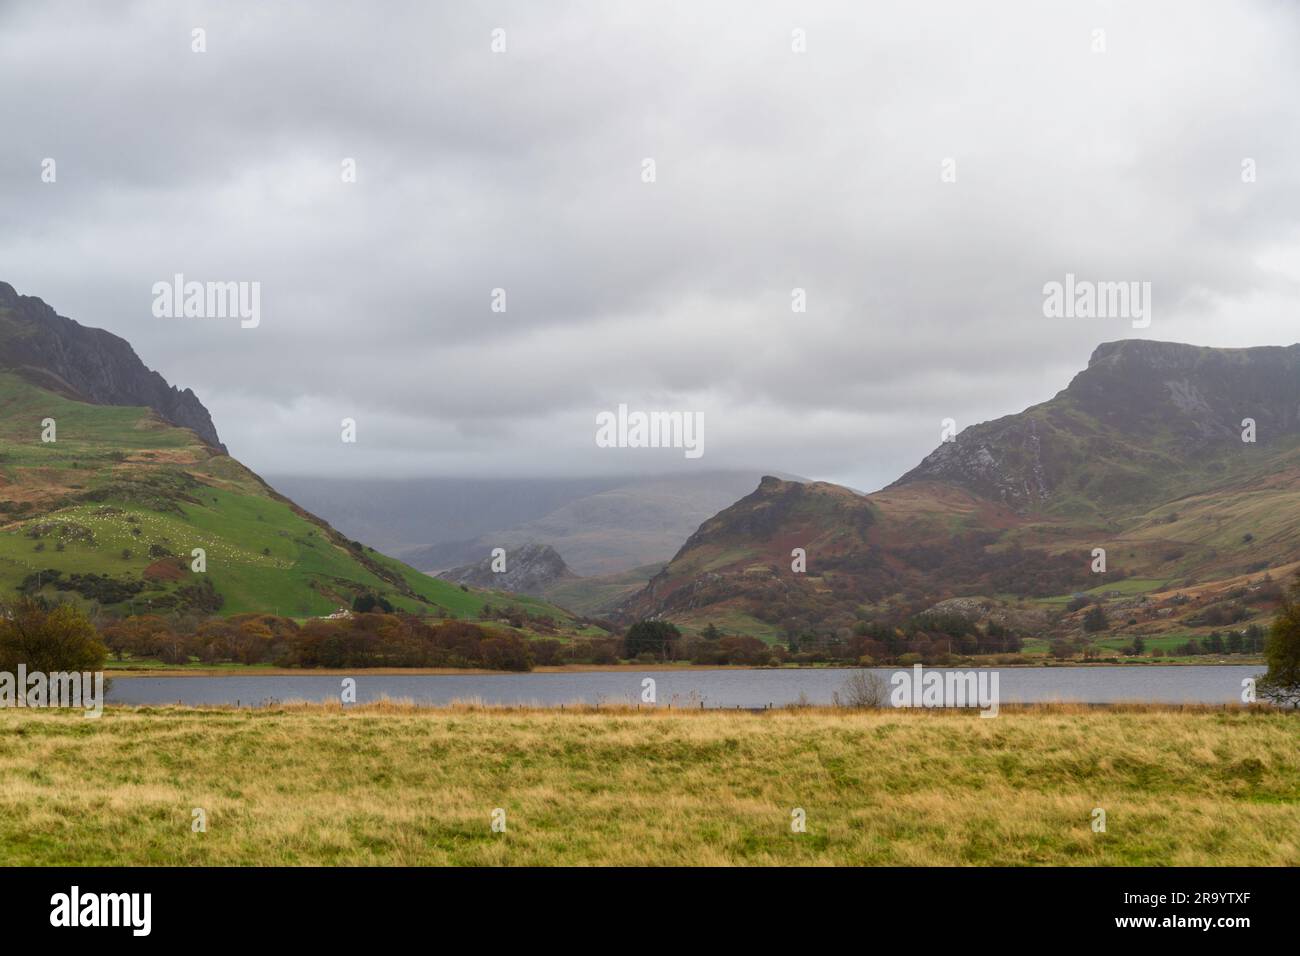 Lake or Llyn Nantlle towards Drws-y-Coed with Snowdon or Yr Wyddfa under cloud, landscape Stock Photo